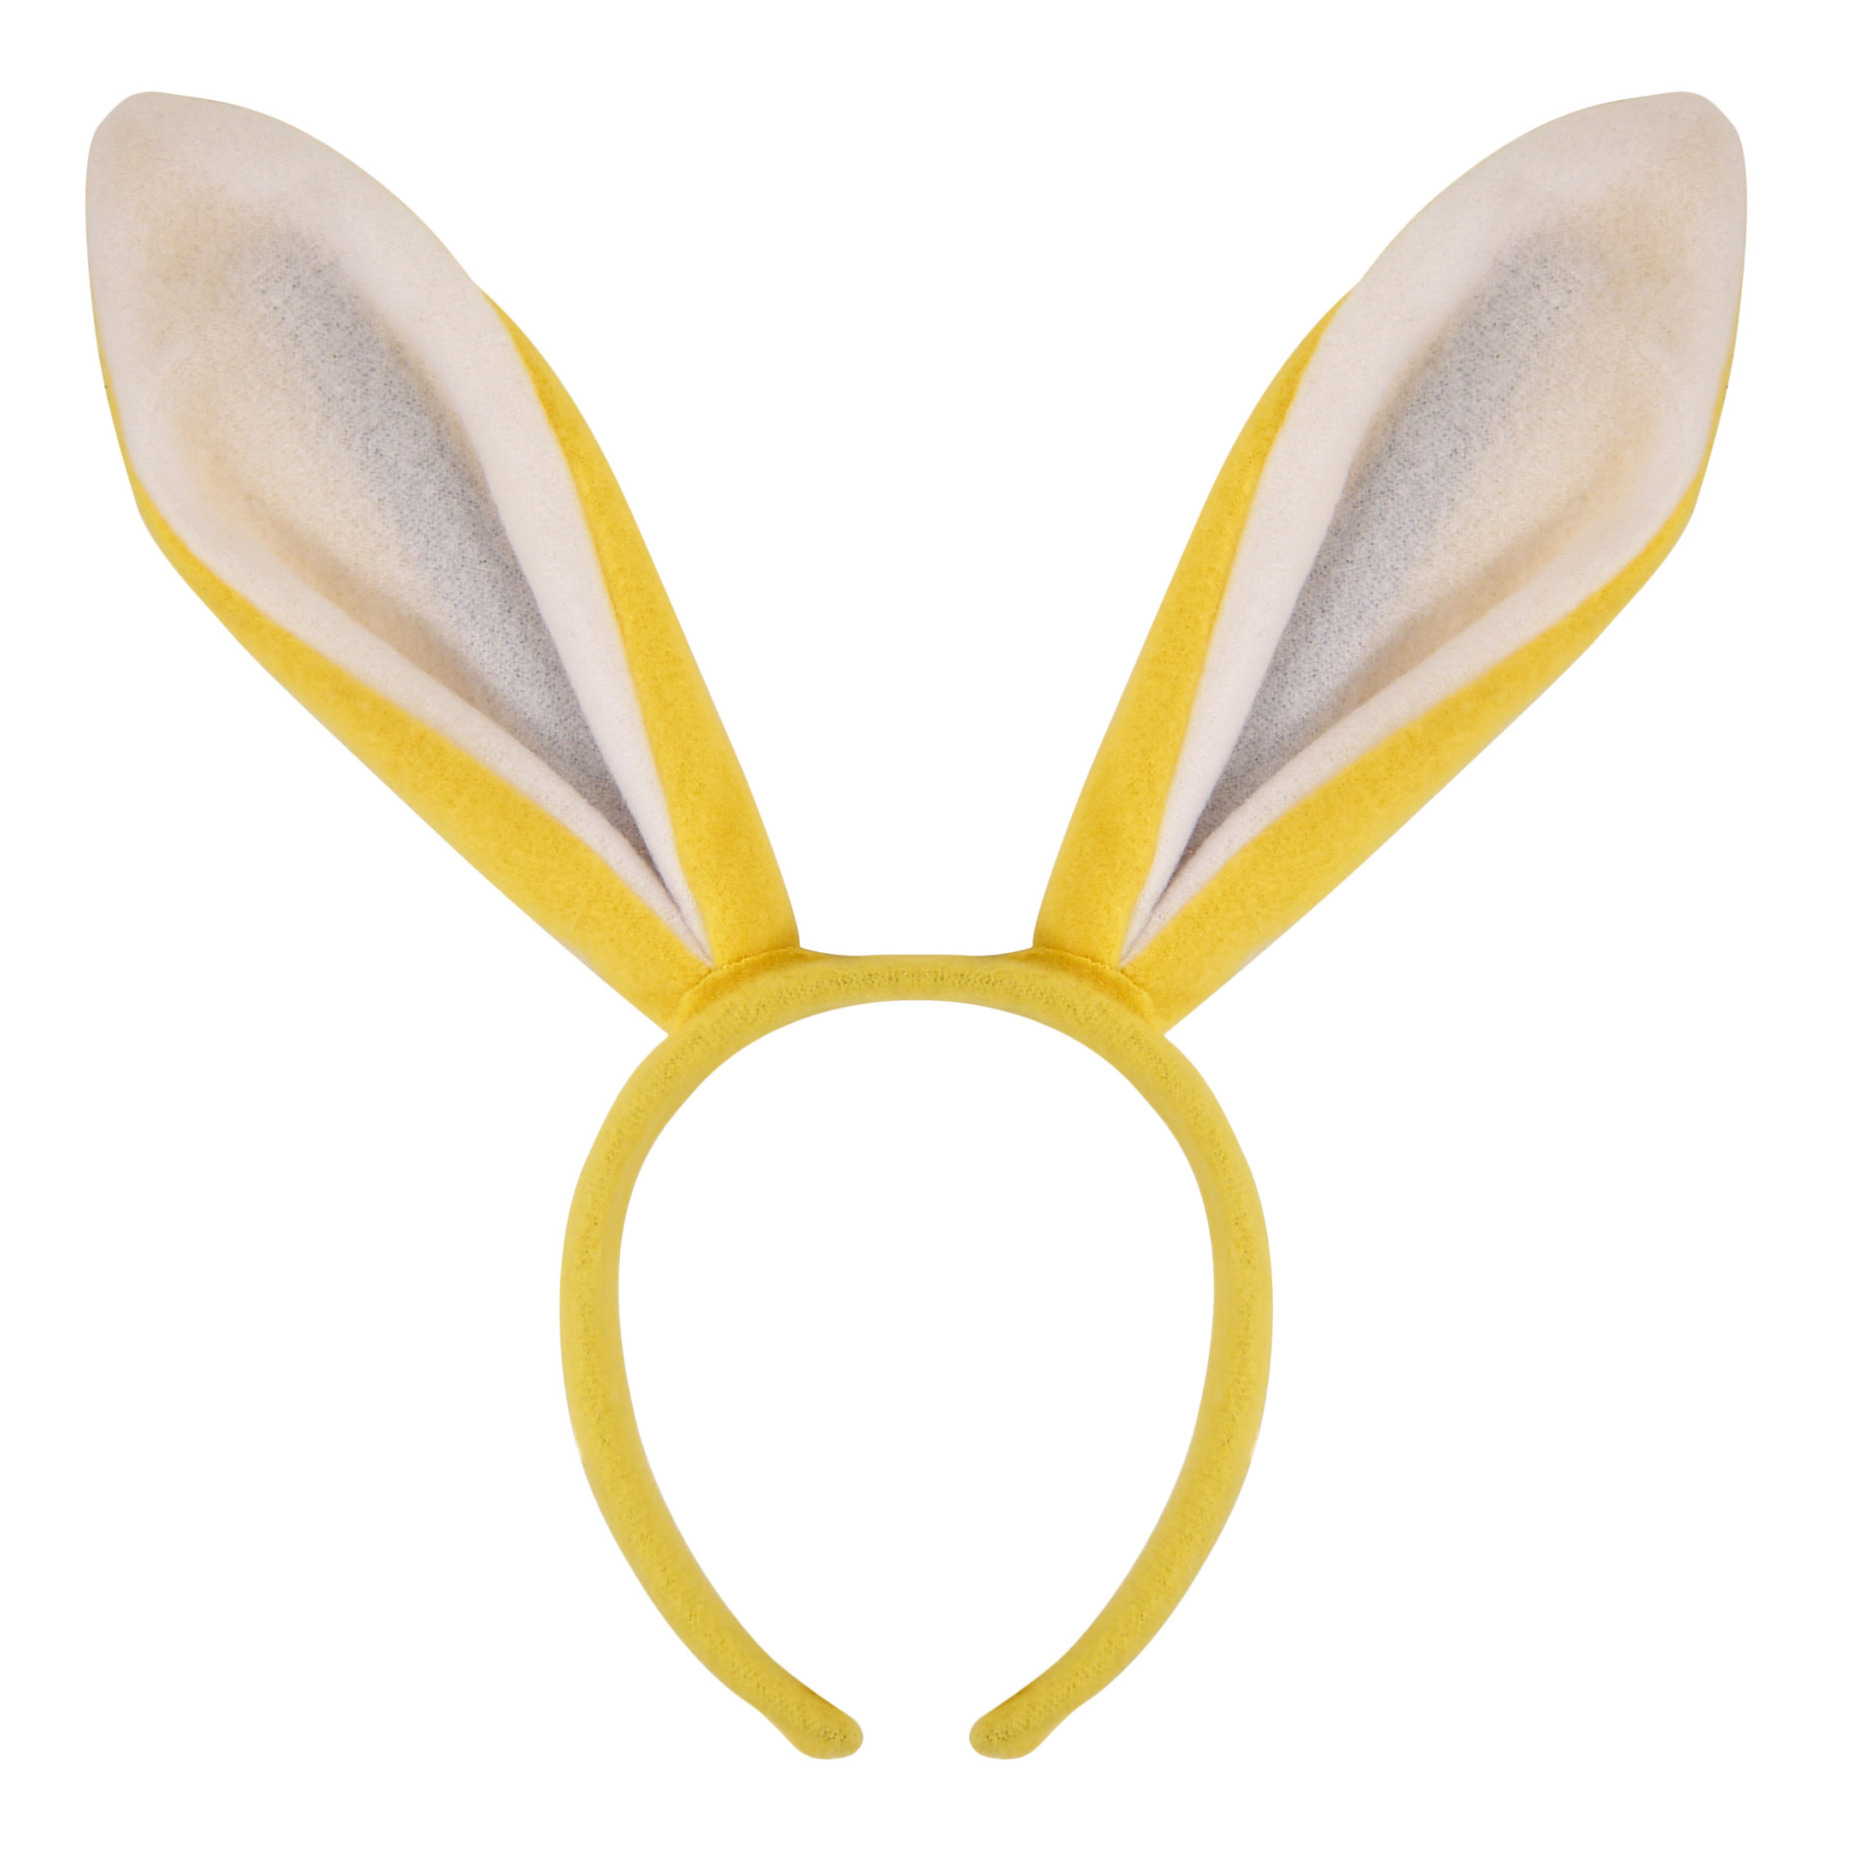 Konijnen-bunny oren geel met wit voor volwassenen 27 x 28 cm